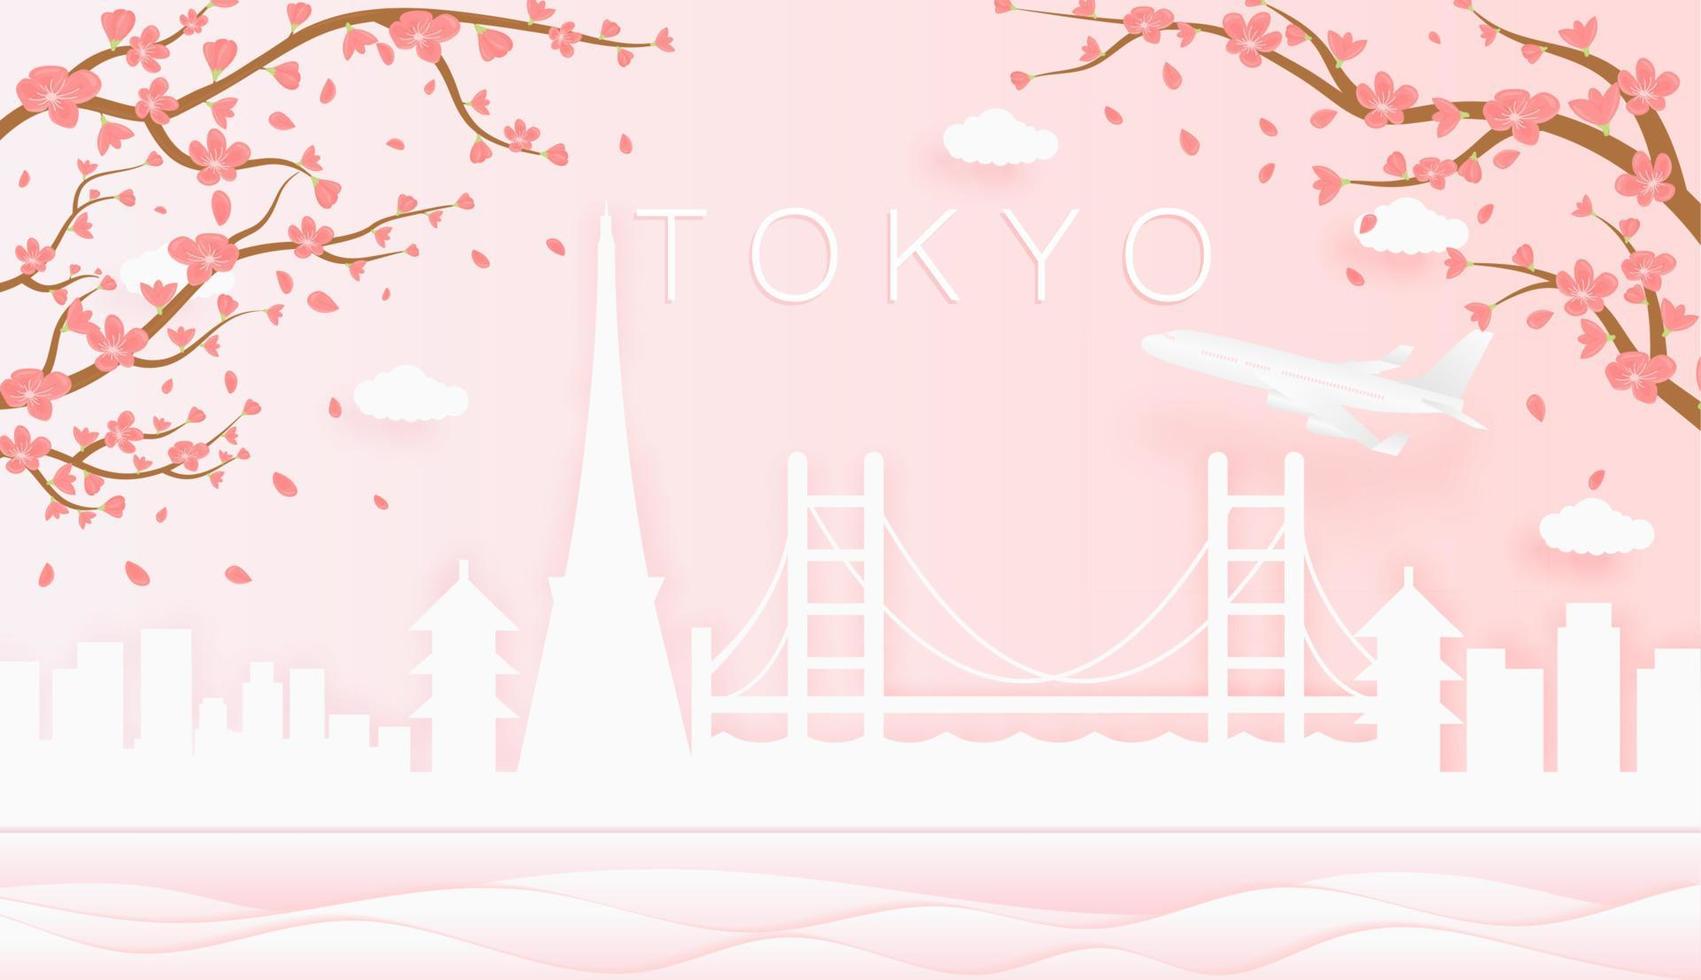 panorama viaje tarjeta postal, póster, excursión publicidad de mundo famoso puntos de referencia de tokio, primavera temporada con floreciente flores en árbol vector icono